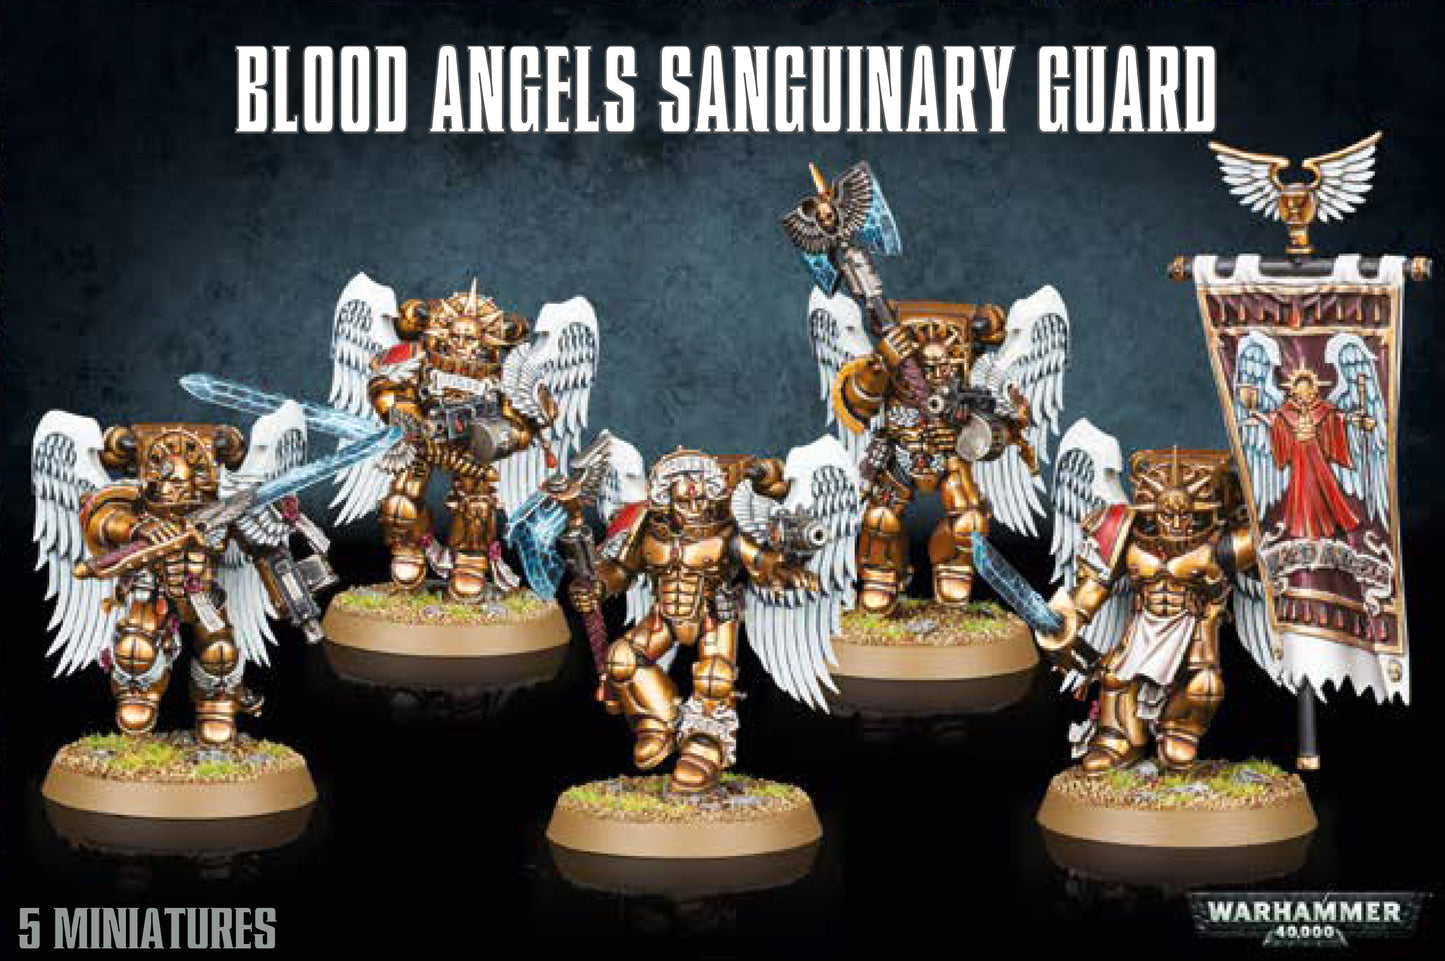 Blood Angels Sanguary Guard